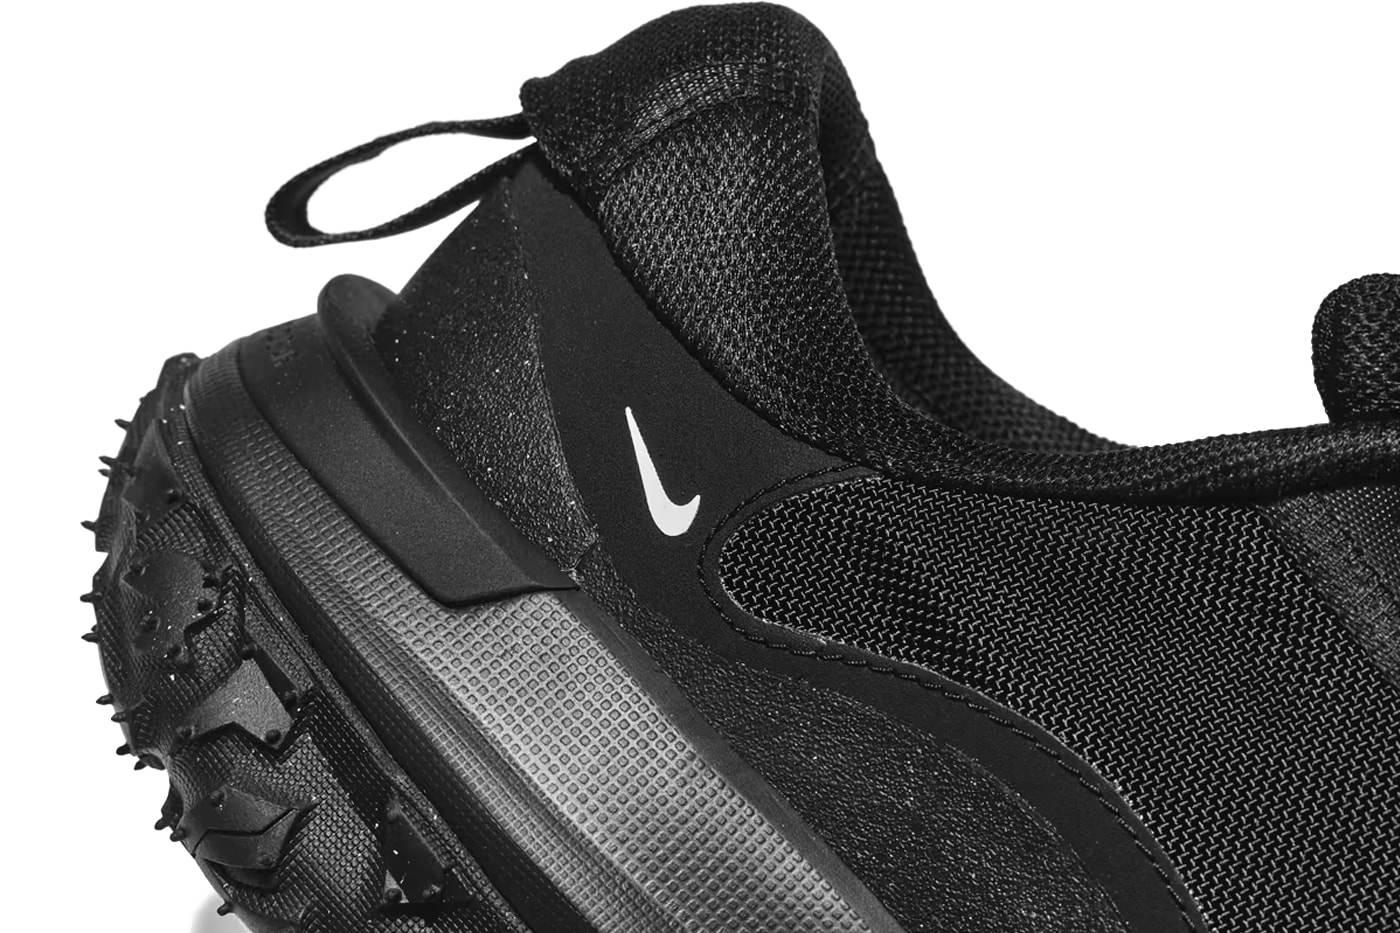 COMME des GARÇONS HOMME PLUS x Nike ACG 全新聯名鞋款發佈